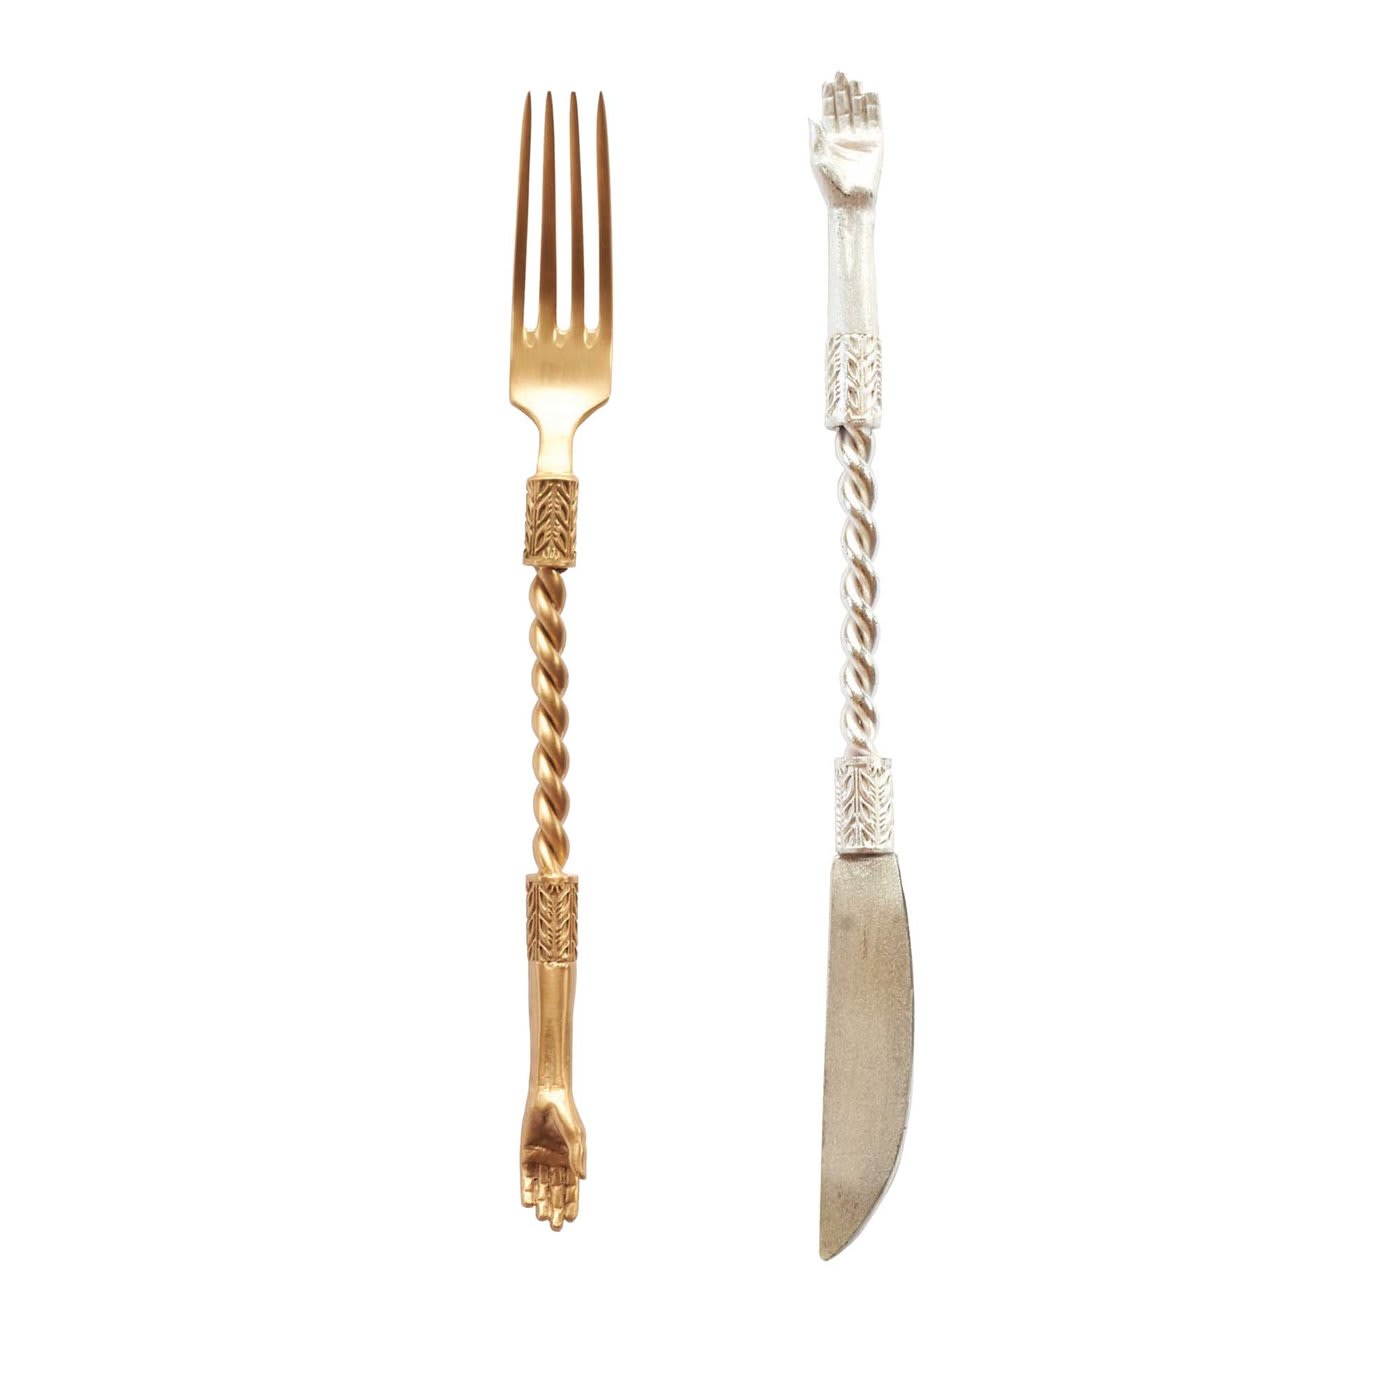 Hand gold fork and silver Knife set - Natalia Criado